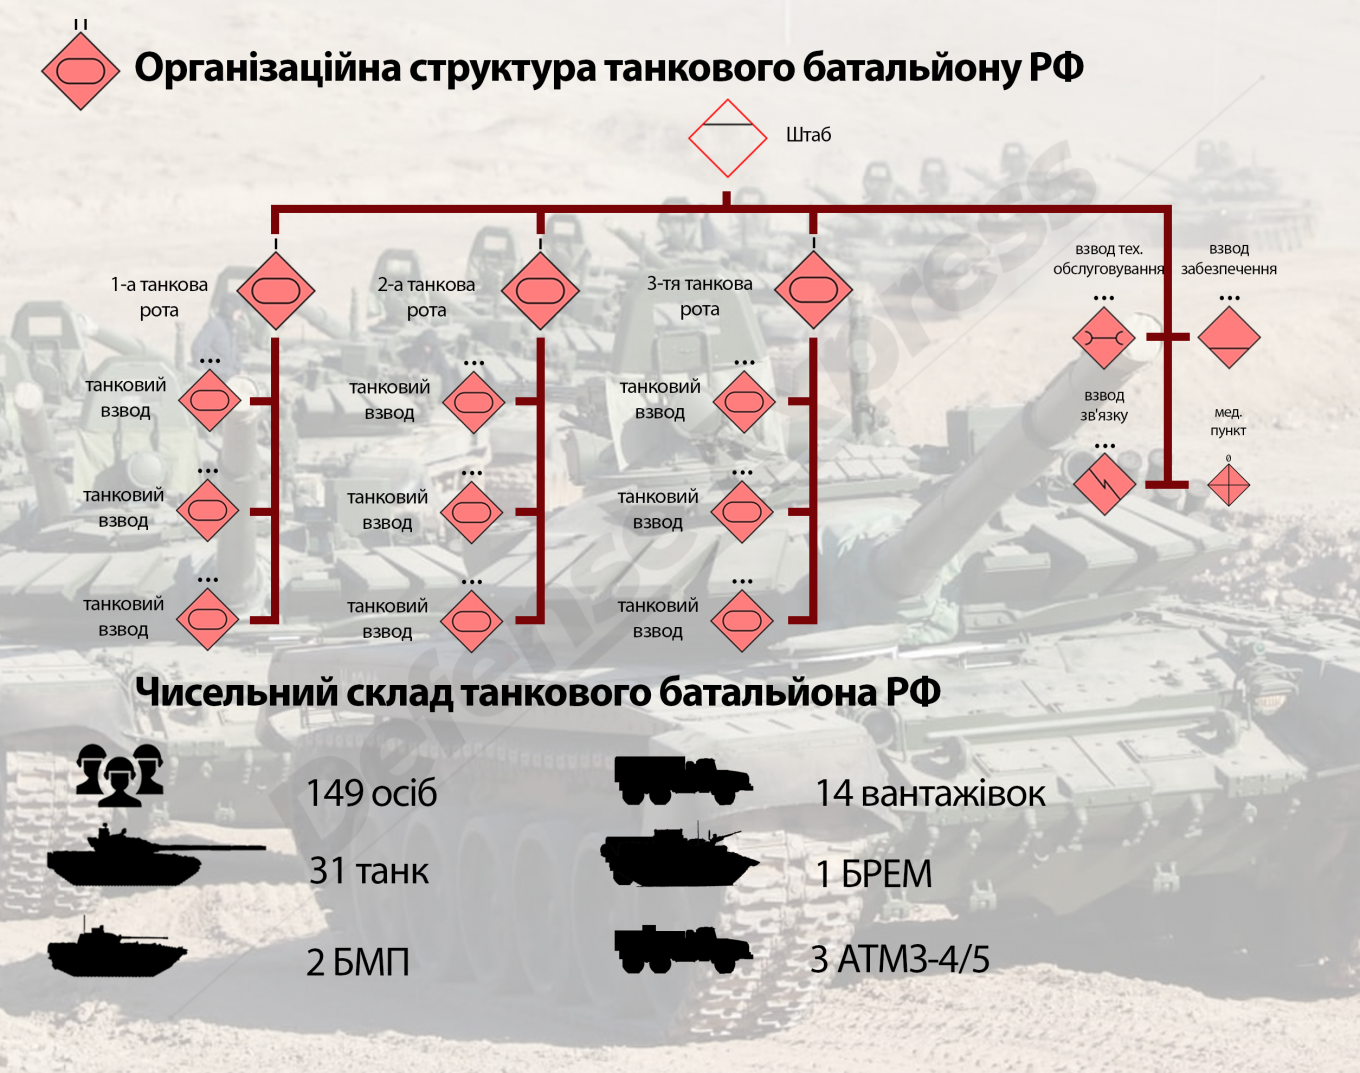 Організаційна структура танкового батальйону загальновійськових полків та дивізій РФ